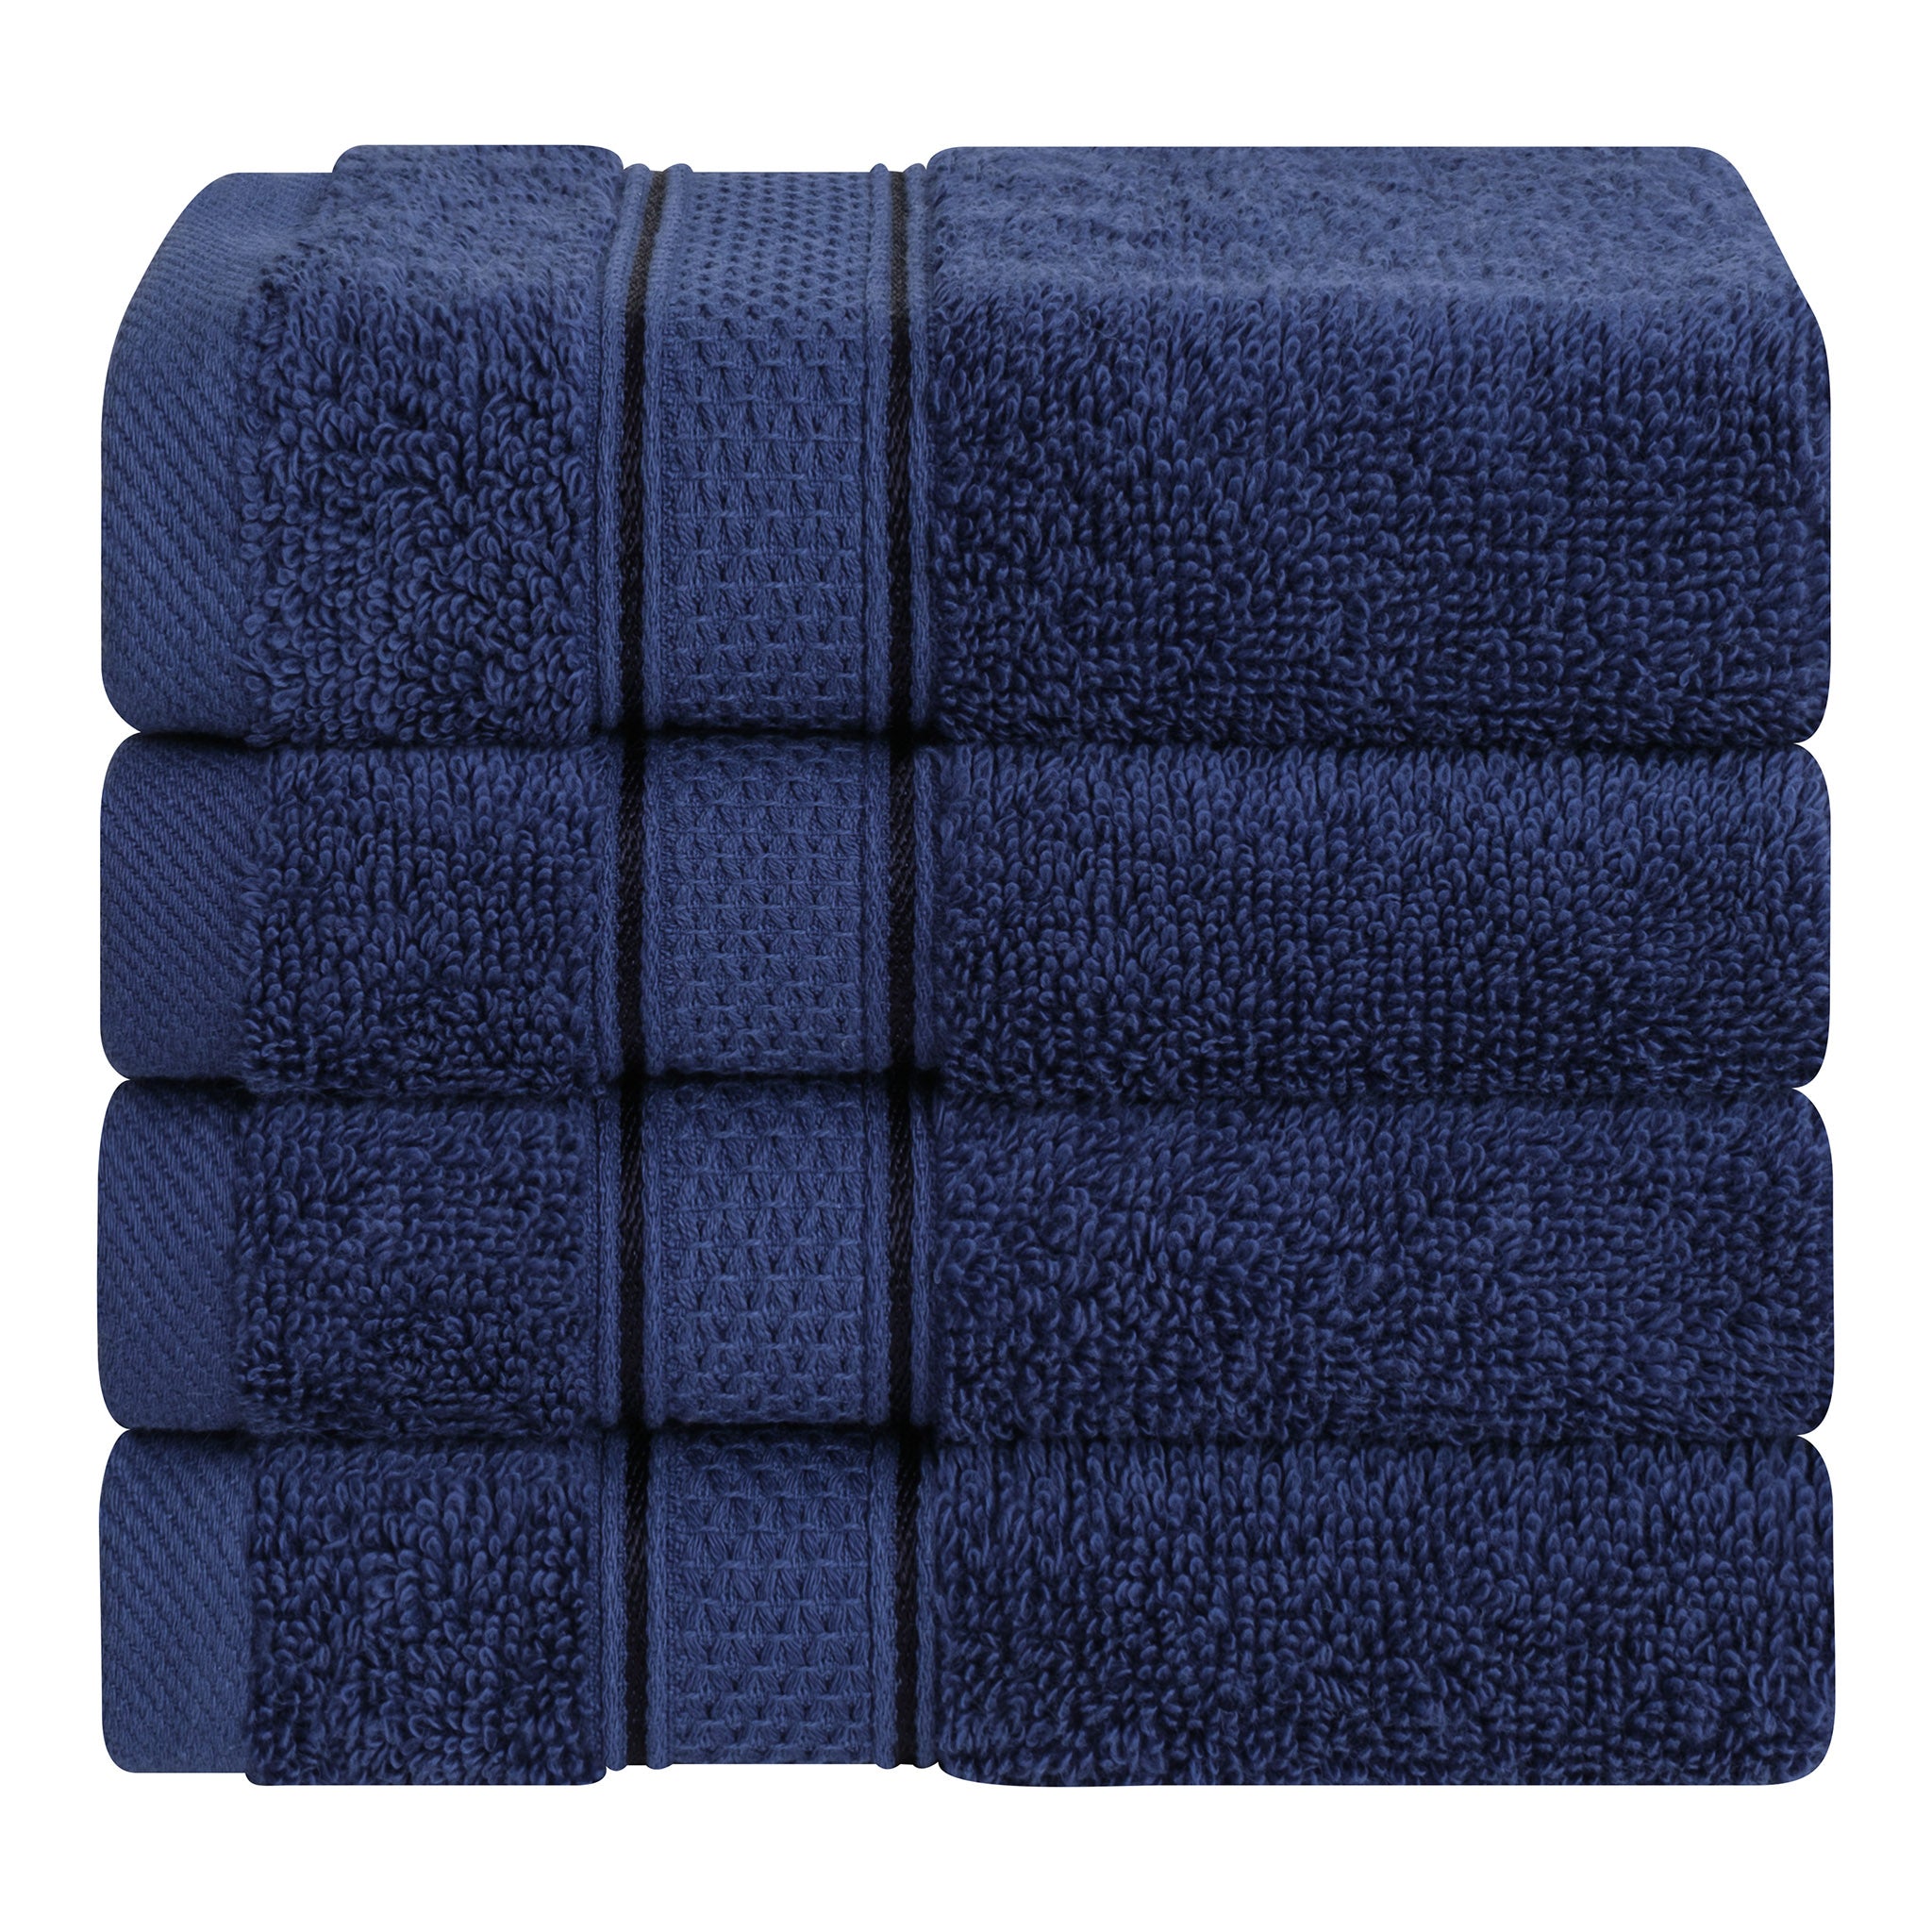 American Soft Linen Salem 100% Turkish Combed Cotton Luxury 4 Piece Washcloth Set -navy-blue-1